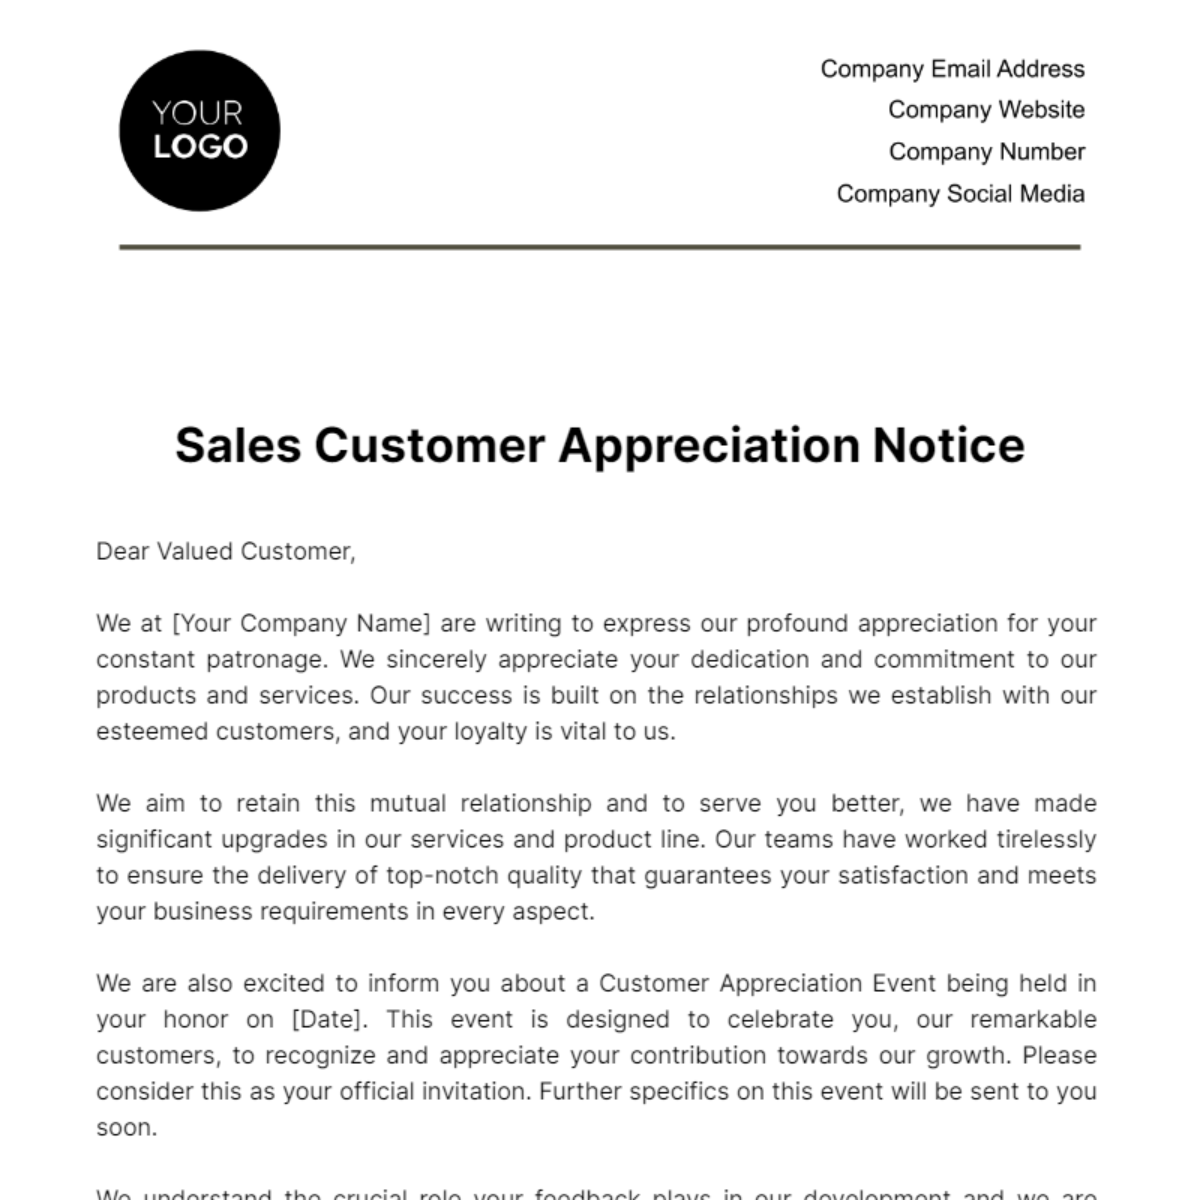 Sales Customer Appreciation Notice Template